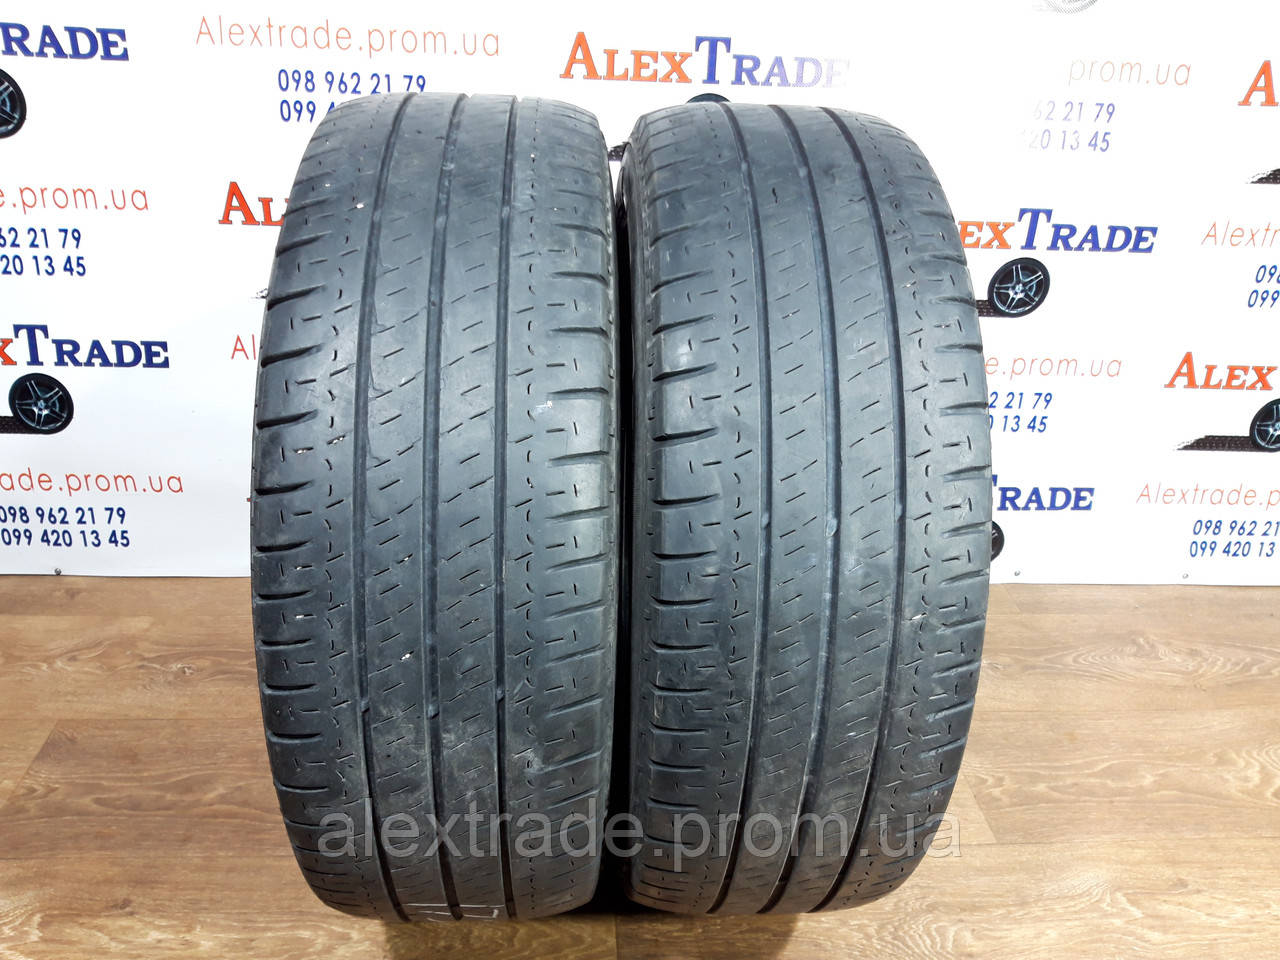 225/70 R15C (цешка) Michelin Agilis літні шини бу